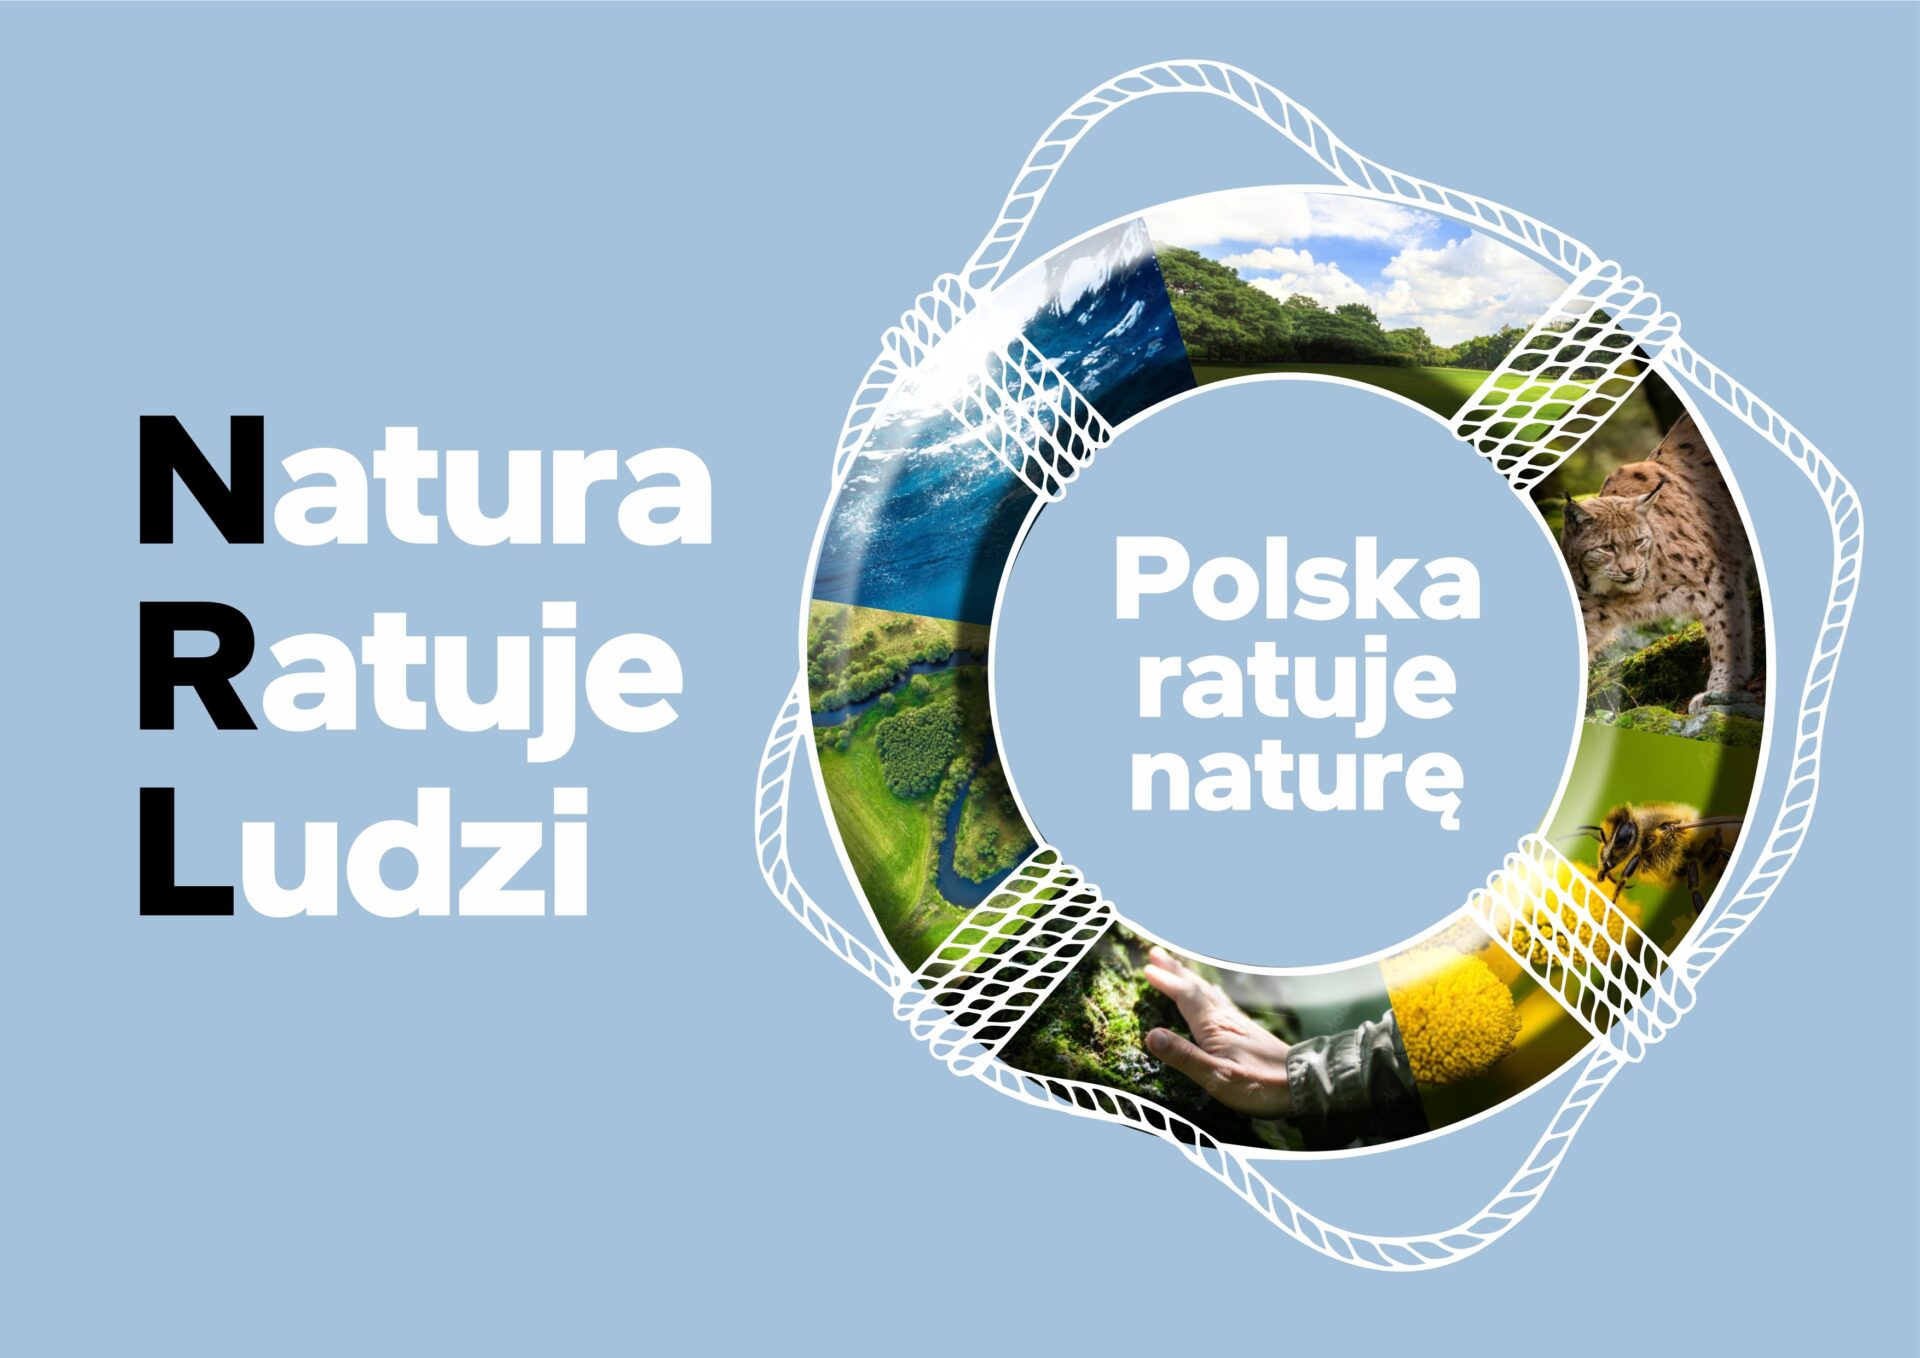 POLSKA ratuje nature grafika71